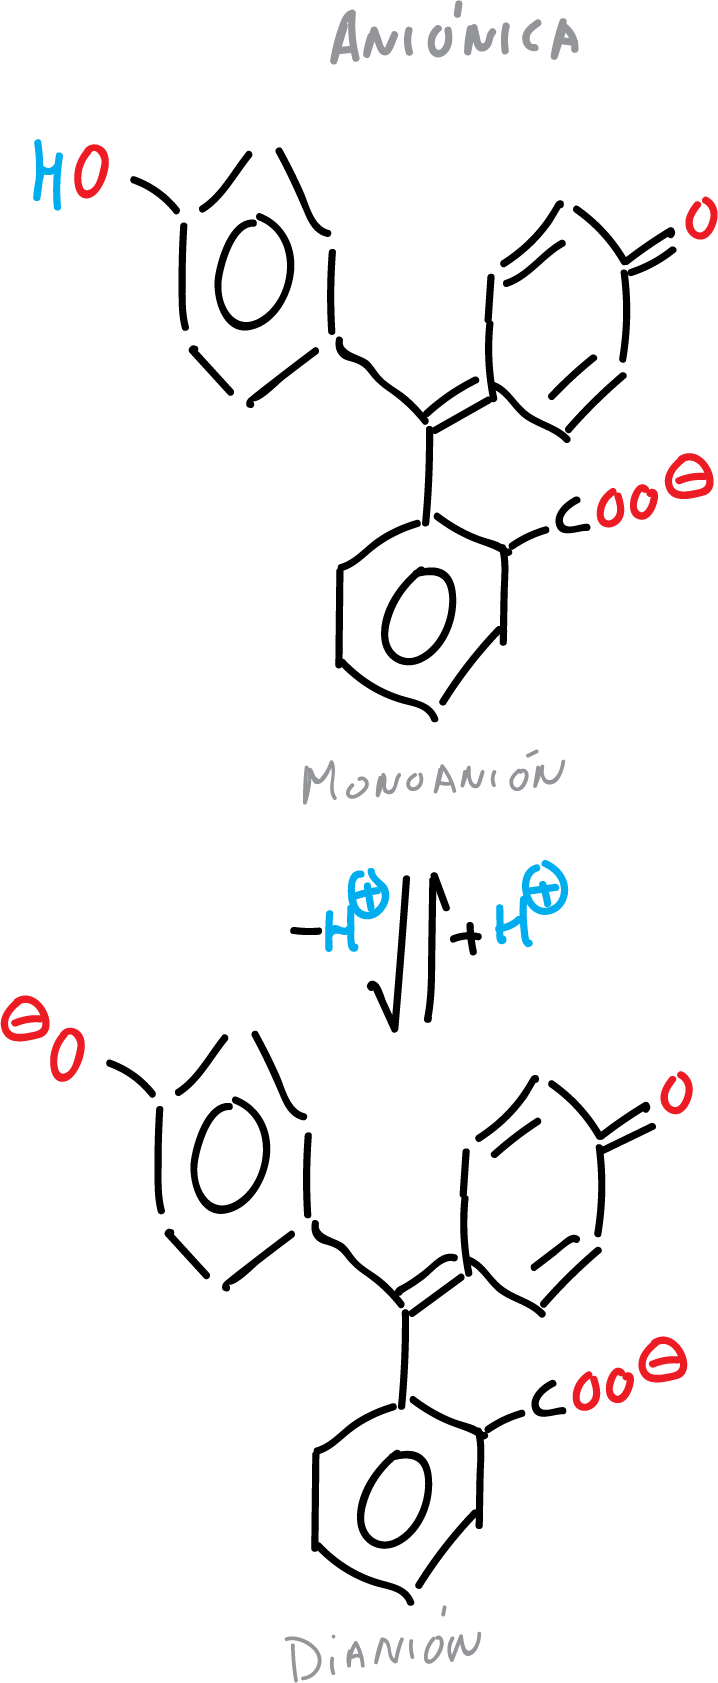 fenolftaleina anionica monoanion dianion